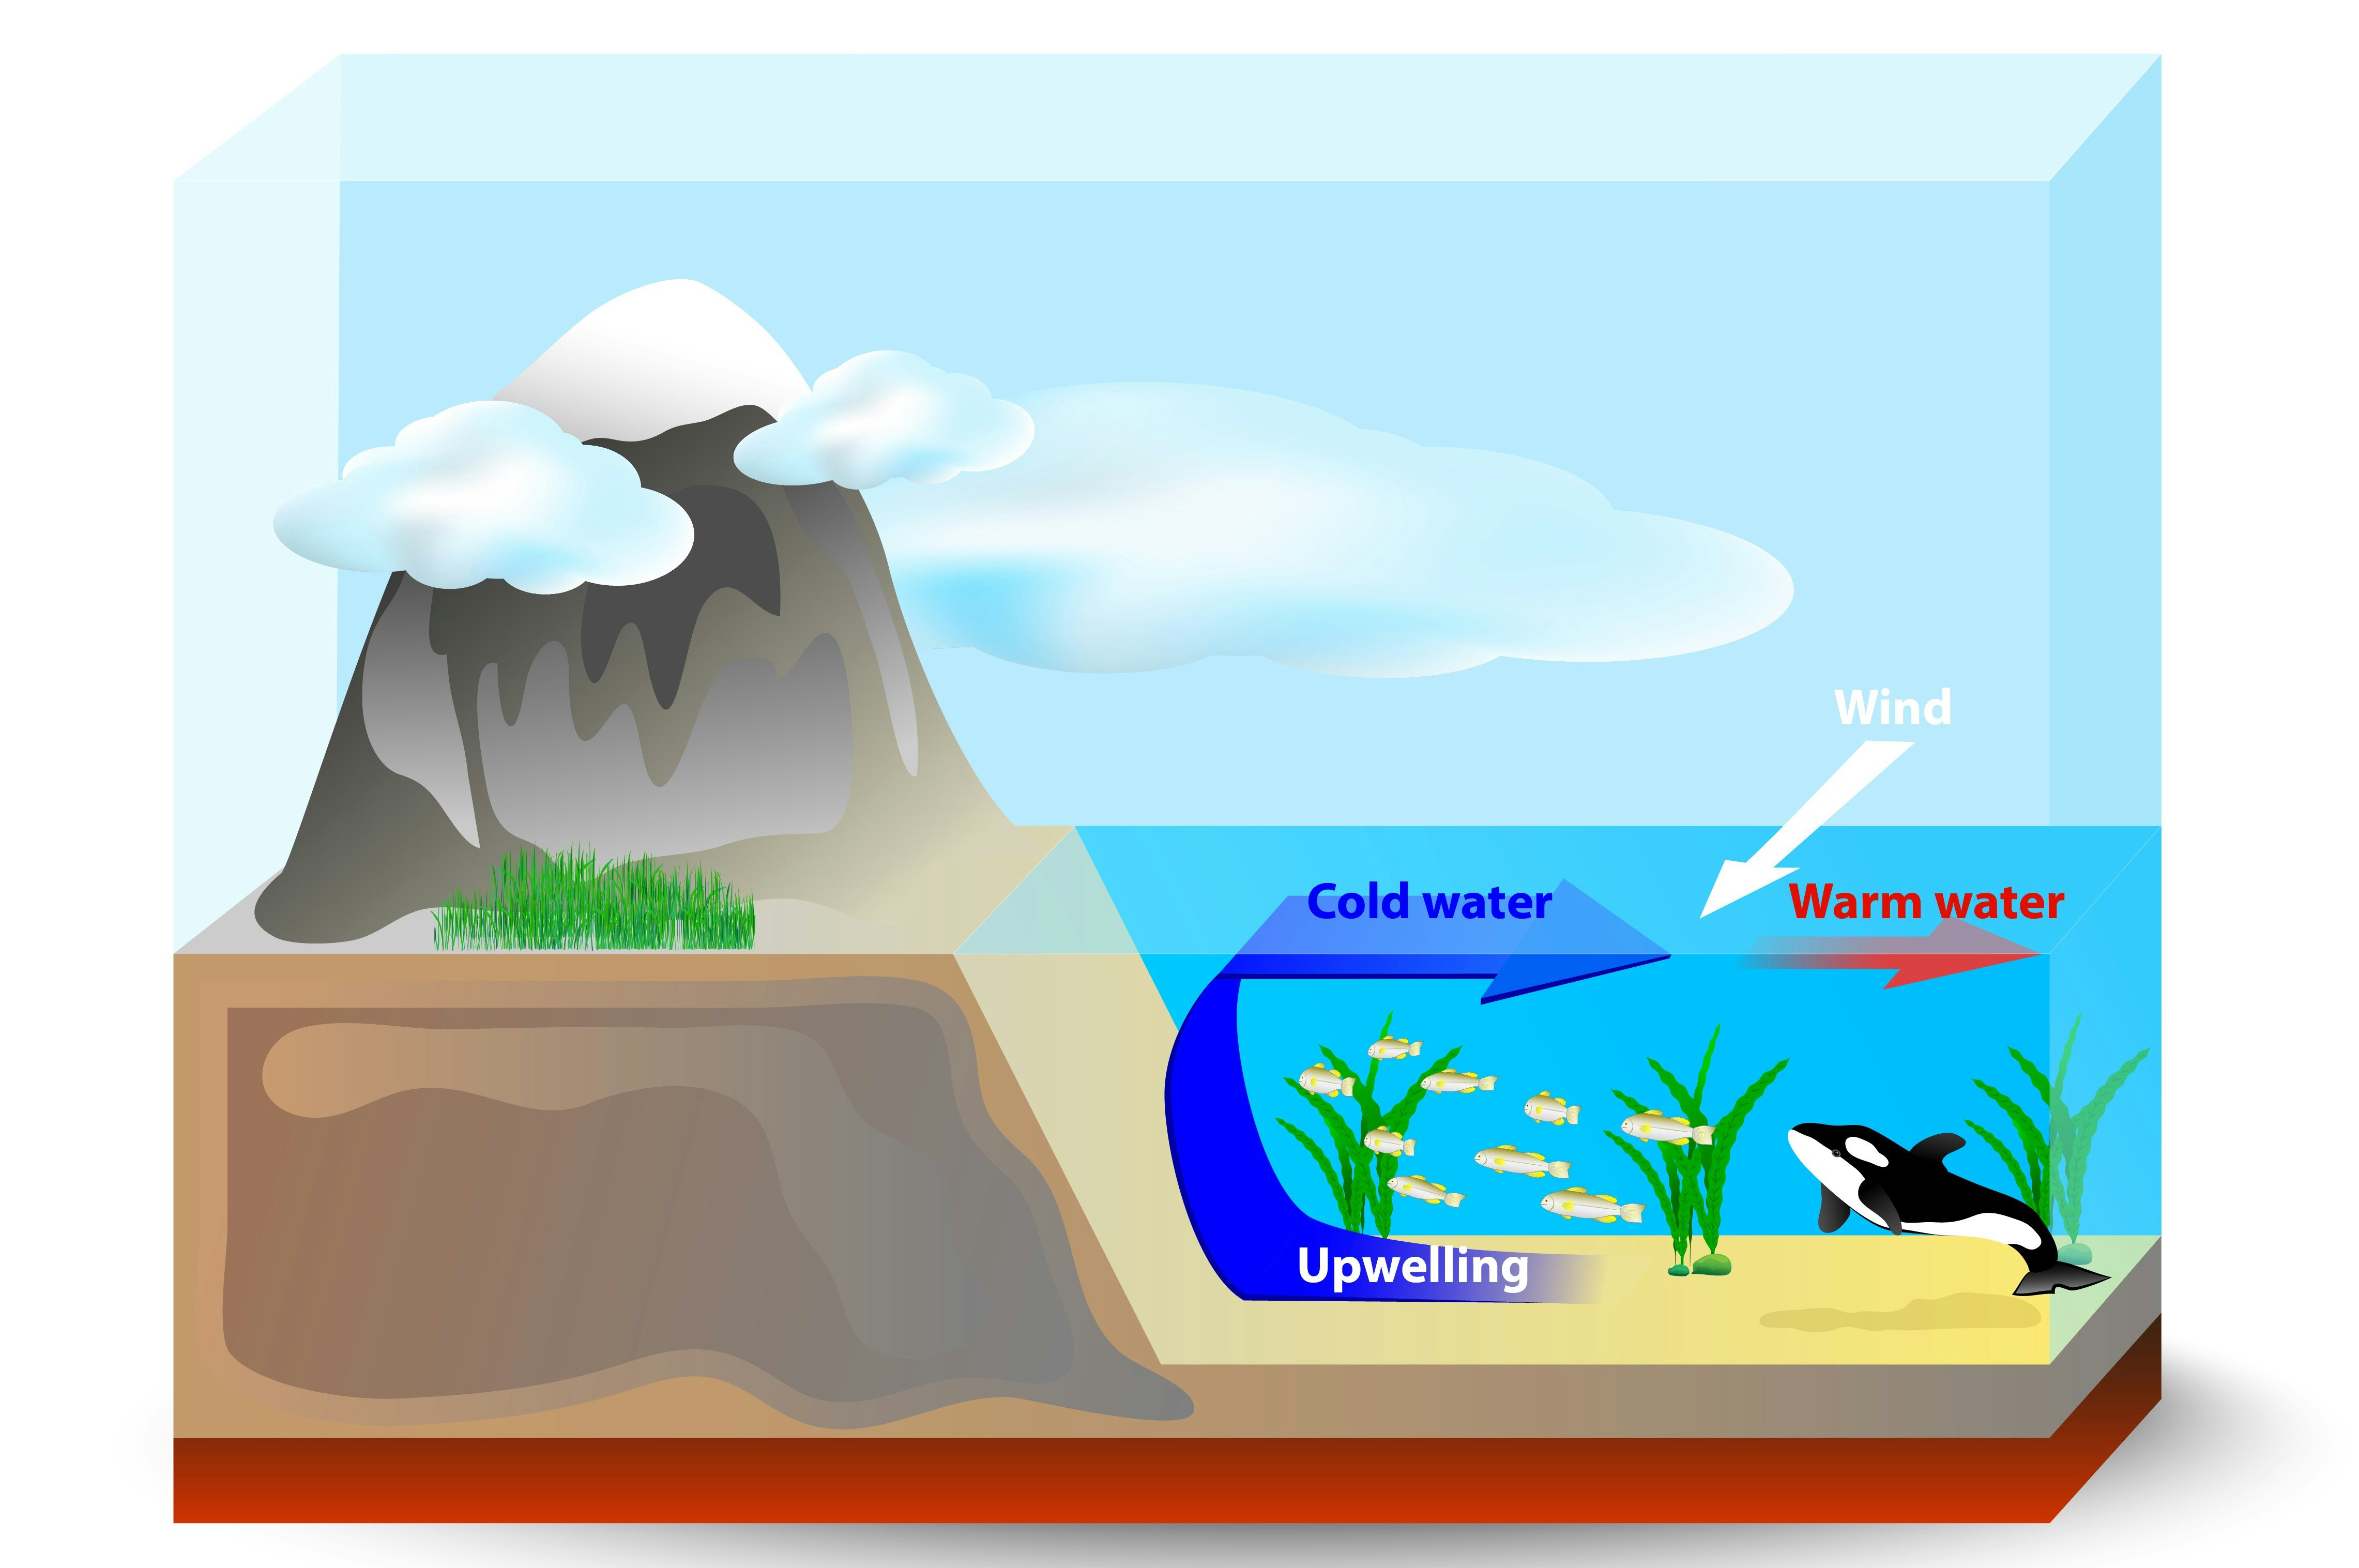 Diagramm der Vermischung von Oberflächen- und Tiefseewasser, Aufwärtsströmungen bringen kaltes Wasser vom Meeresboden an die Oberfläche